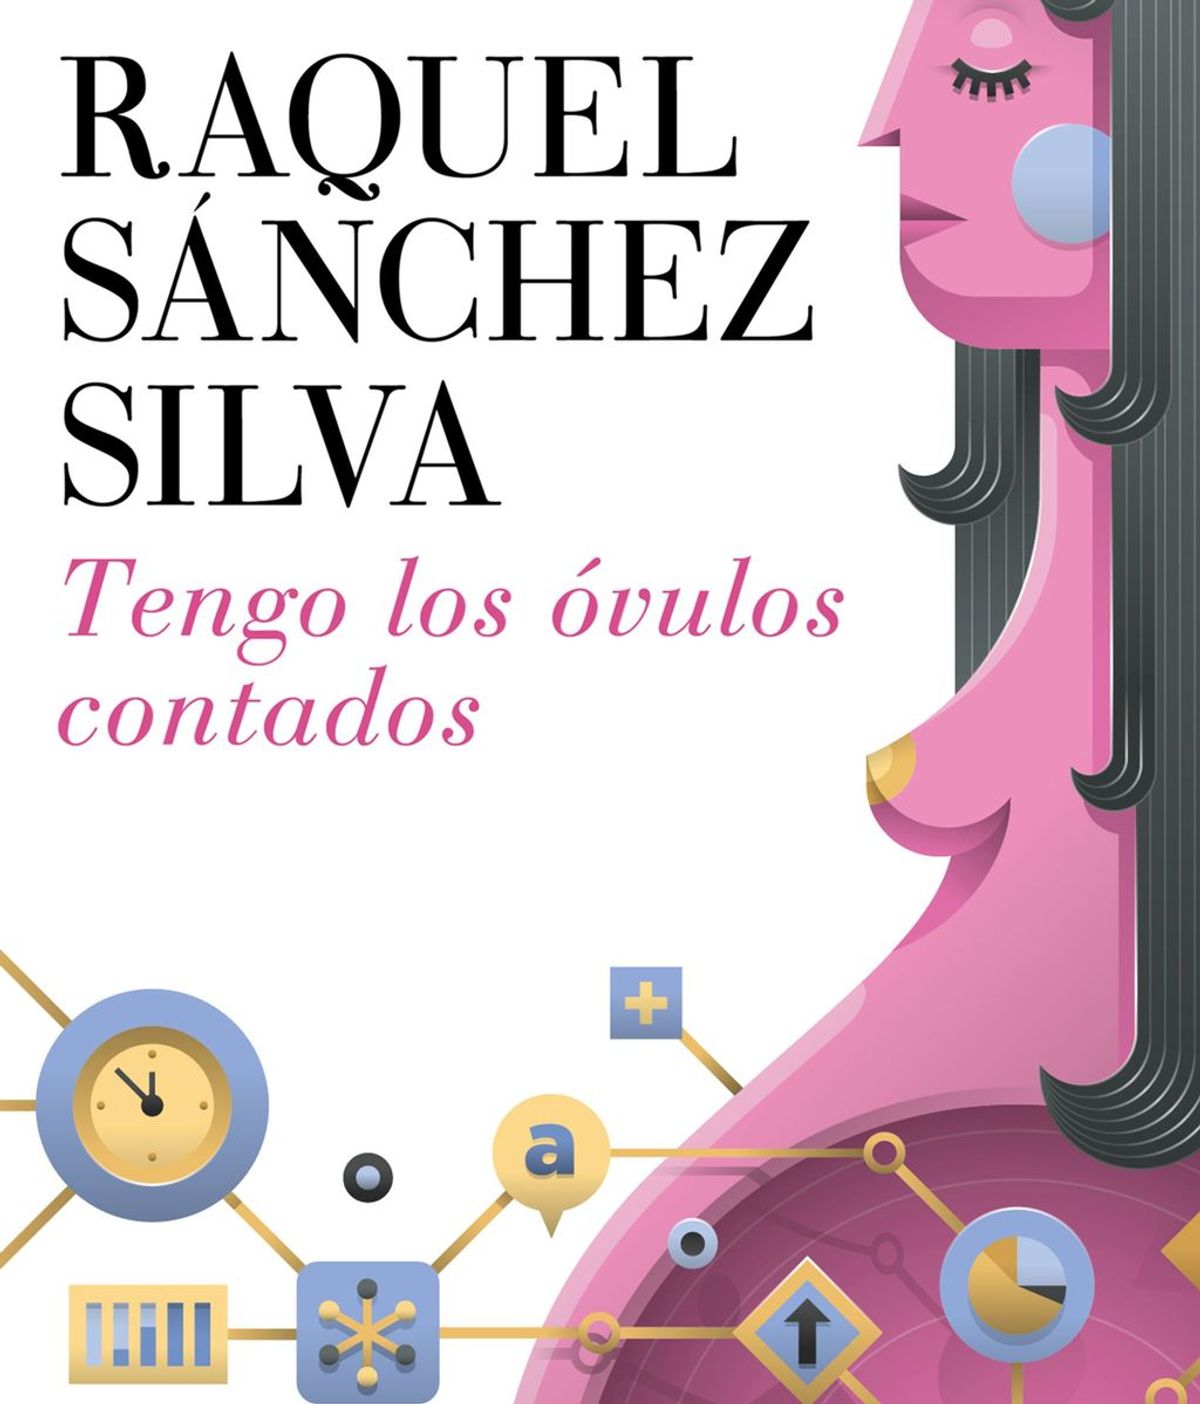 Tras el éxito de "Mañana, a las seis" vuelve Raquel Sánchez Silva con "Tengo lo óvulos contados"